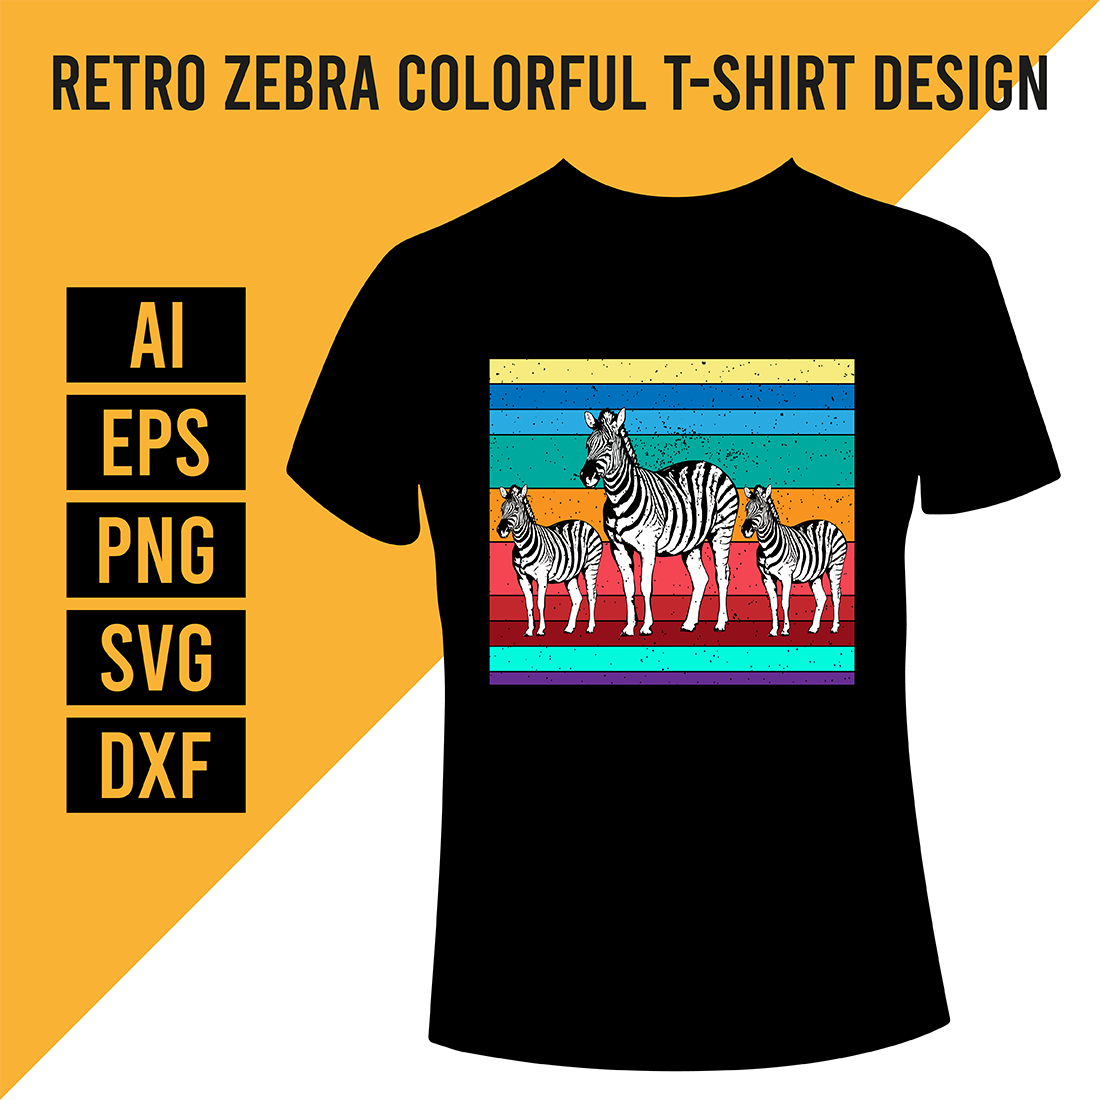 Retro Zebra Colorful T-Shirt Design cover image.